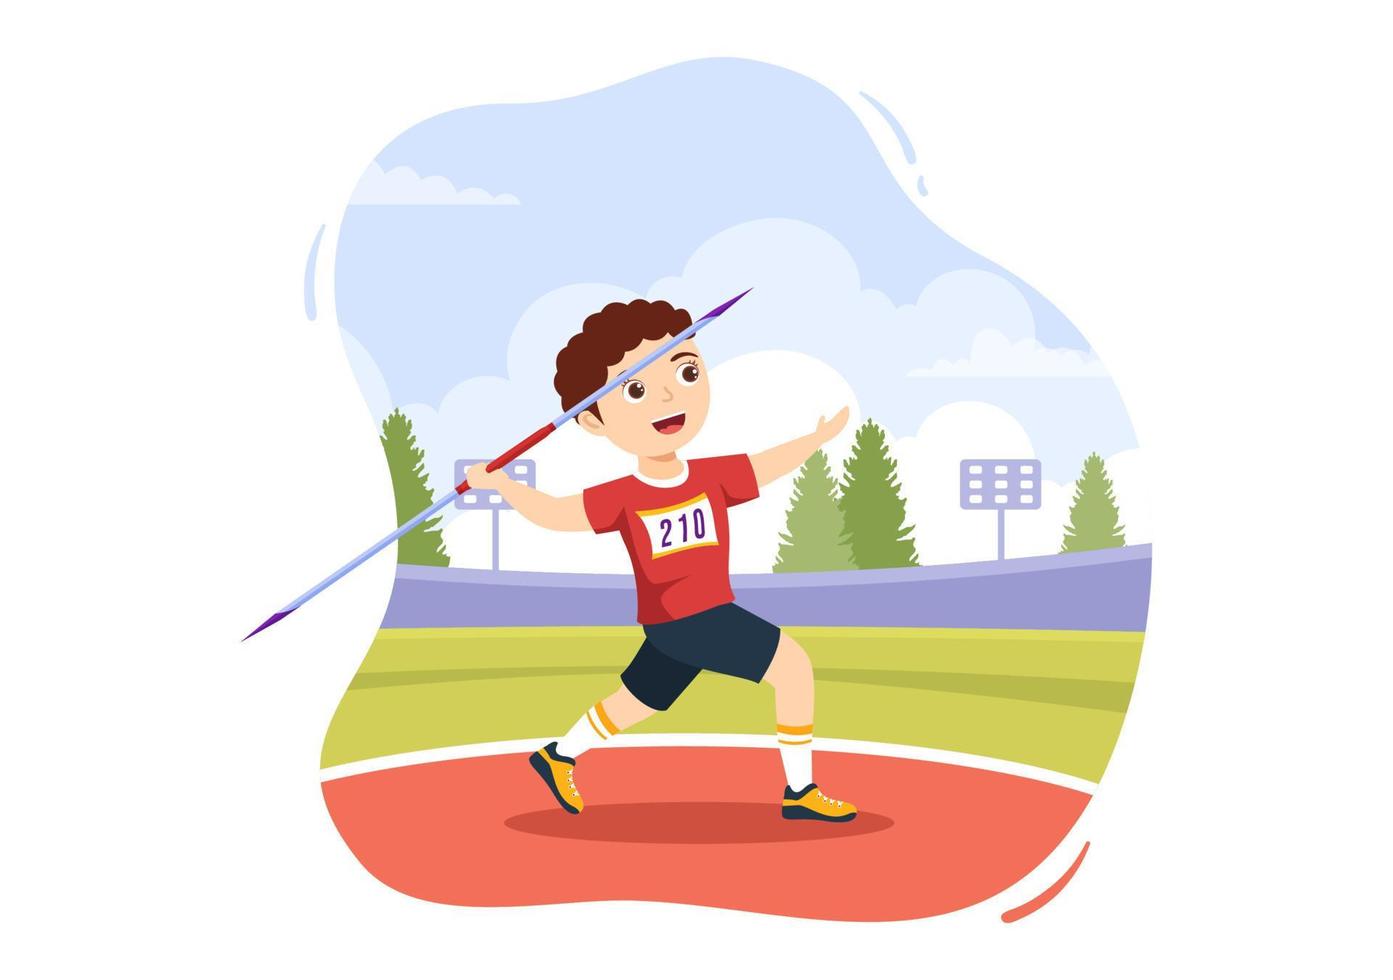 spjut kasta barn idrottare illustration använder sig av en lång lans formad verktyg till kasta i sporter aktivitet platt tecknad serie hand dragen mall vektor